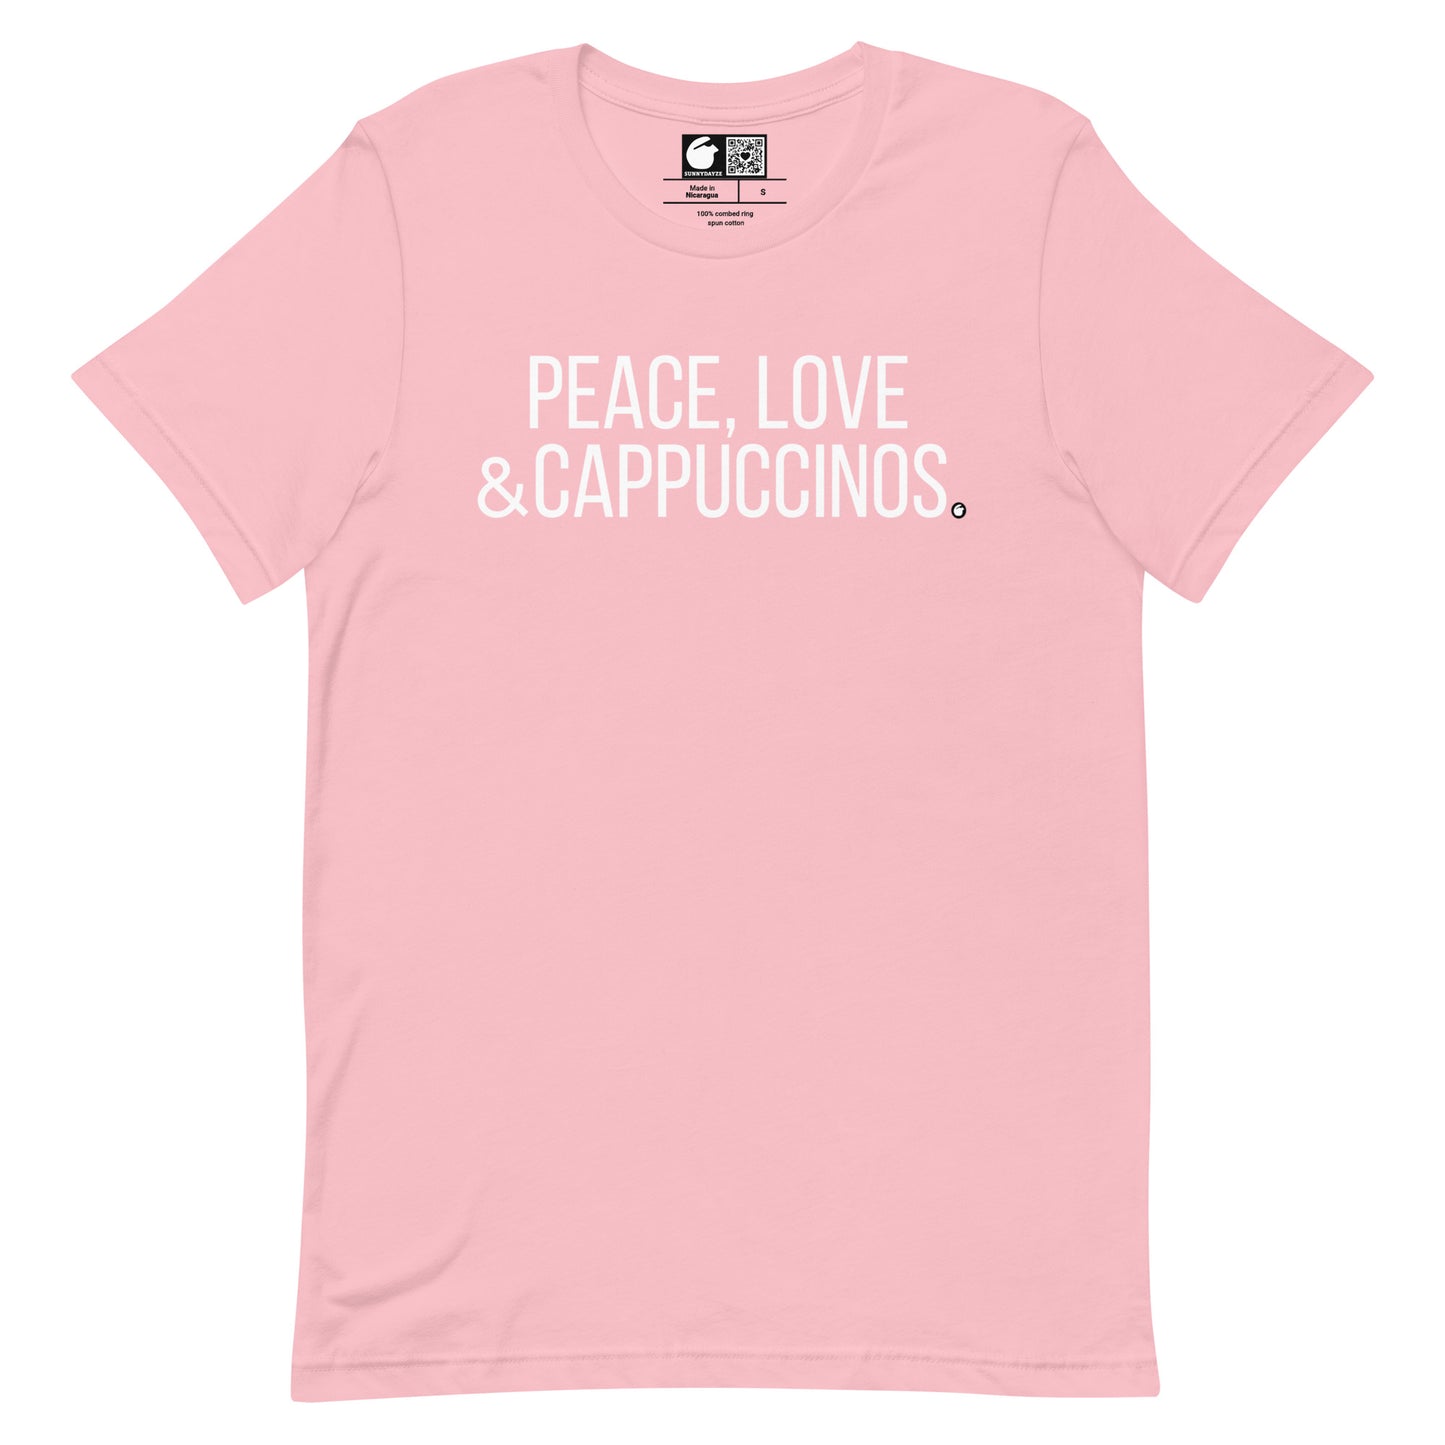 CAPPUCCINOS Short-Sleeve Unisex t-shirt